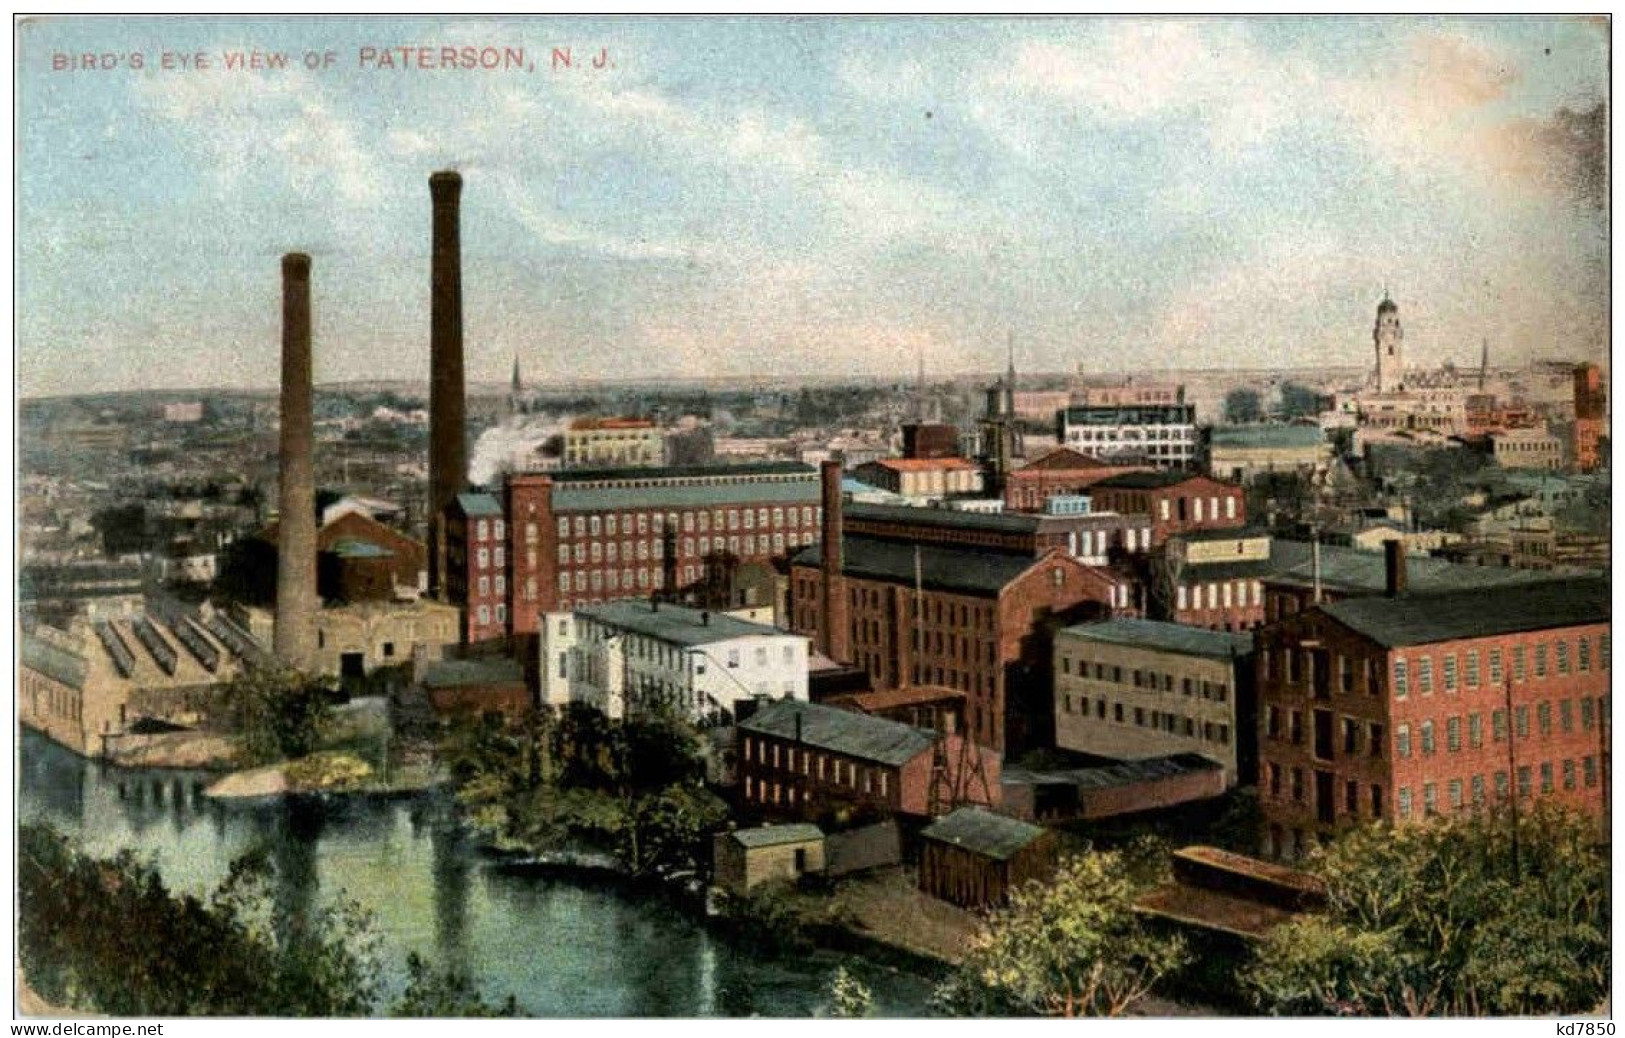 Paterson - Paterson